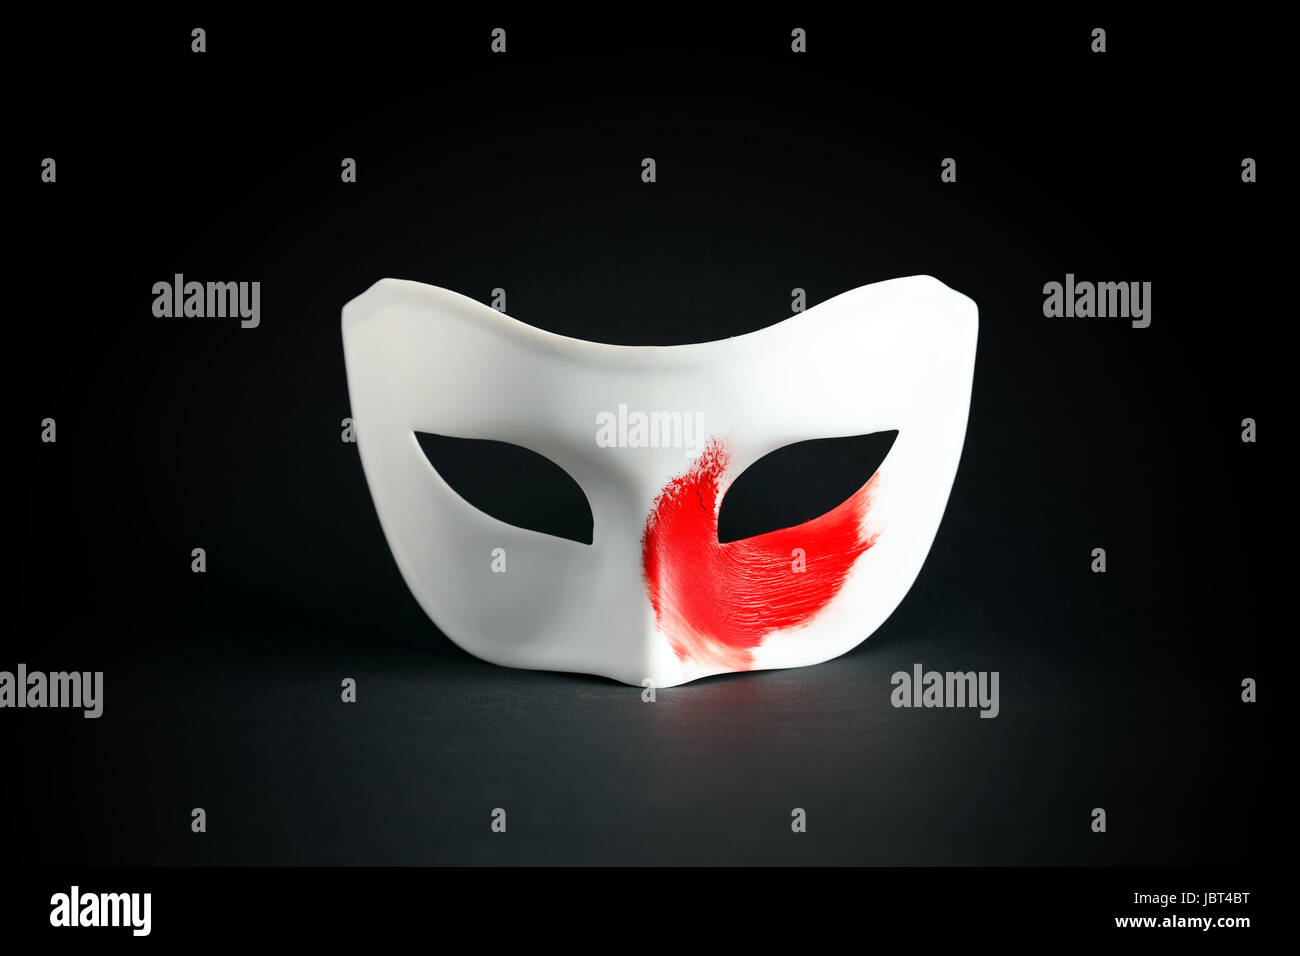 Concept Art. Masque Blanc avec tache rouge de peinture sur fond noir Banque D'Images